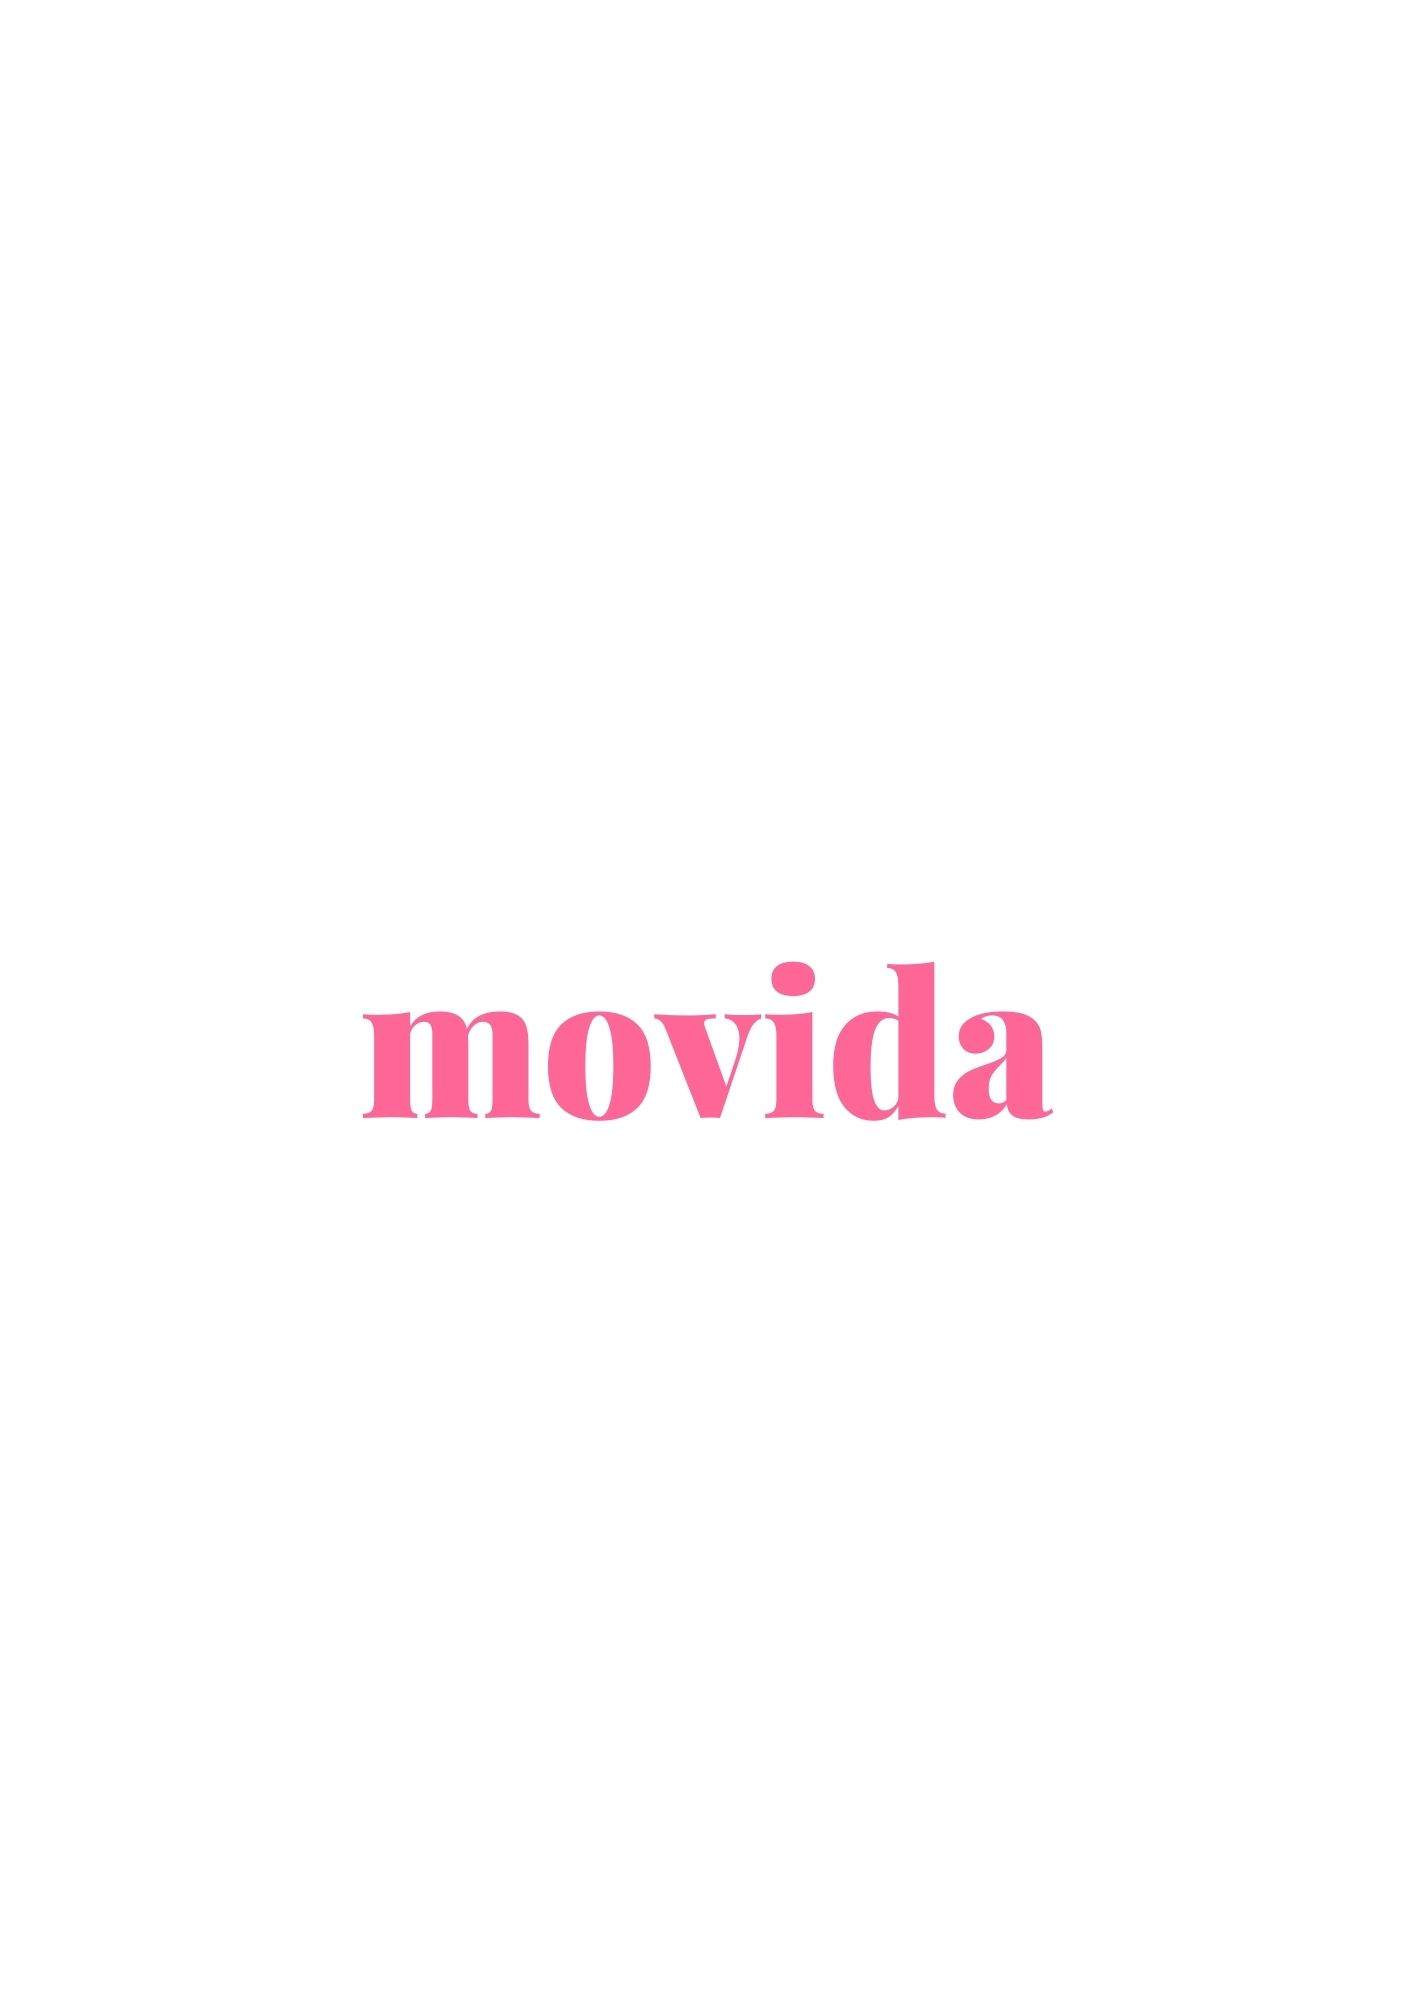 Movida - フライヤー表